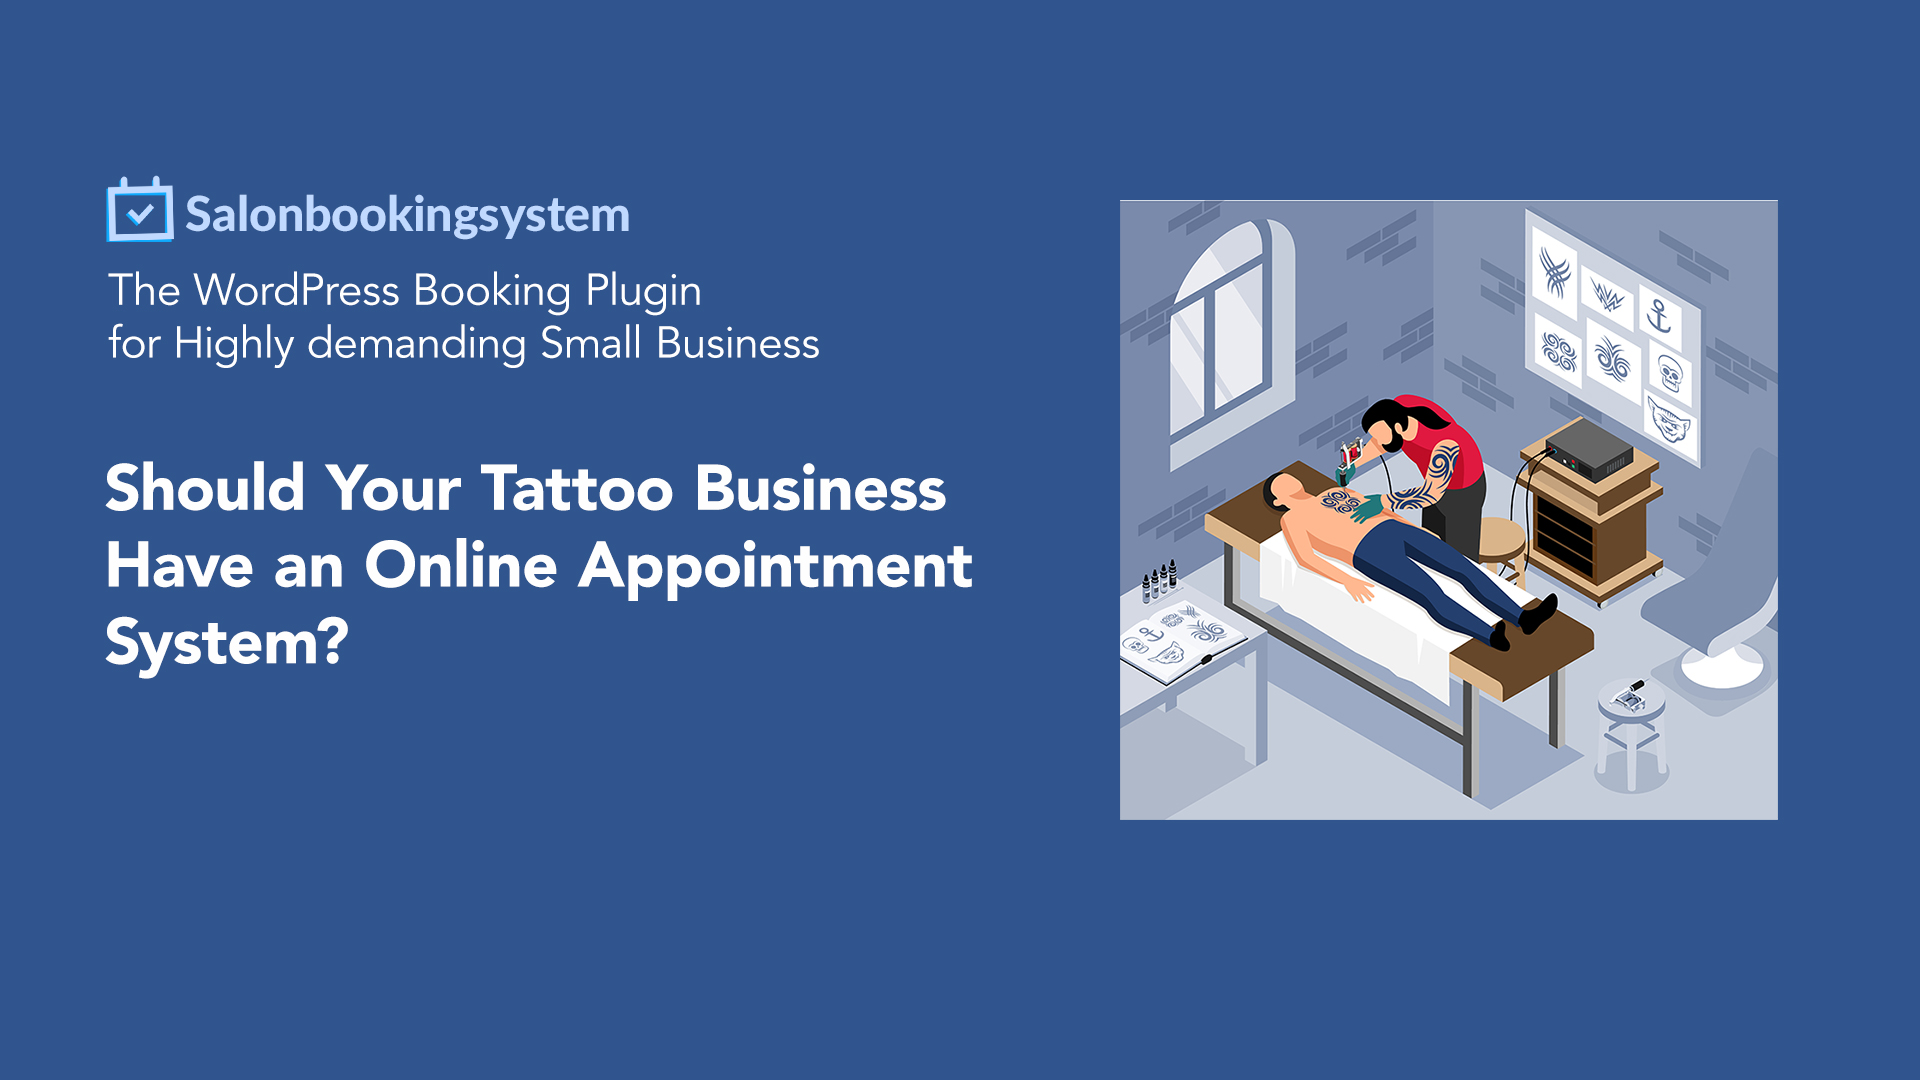 Tattoo Shop Management Platform - Kliniki by HBTech